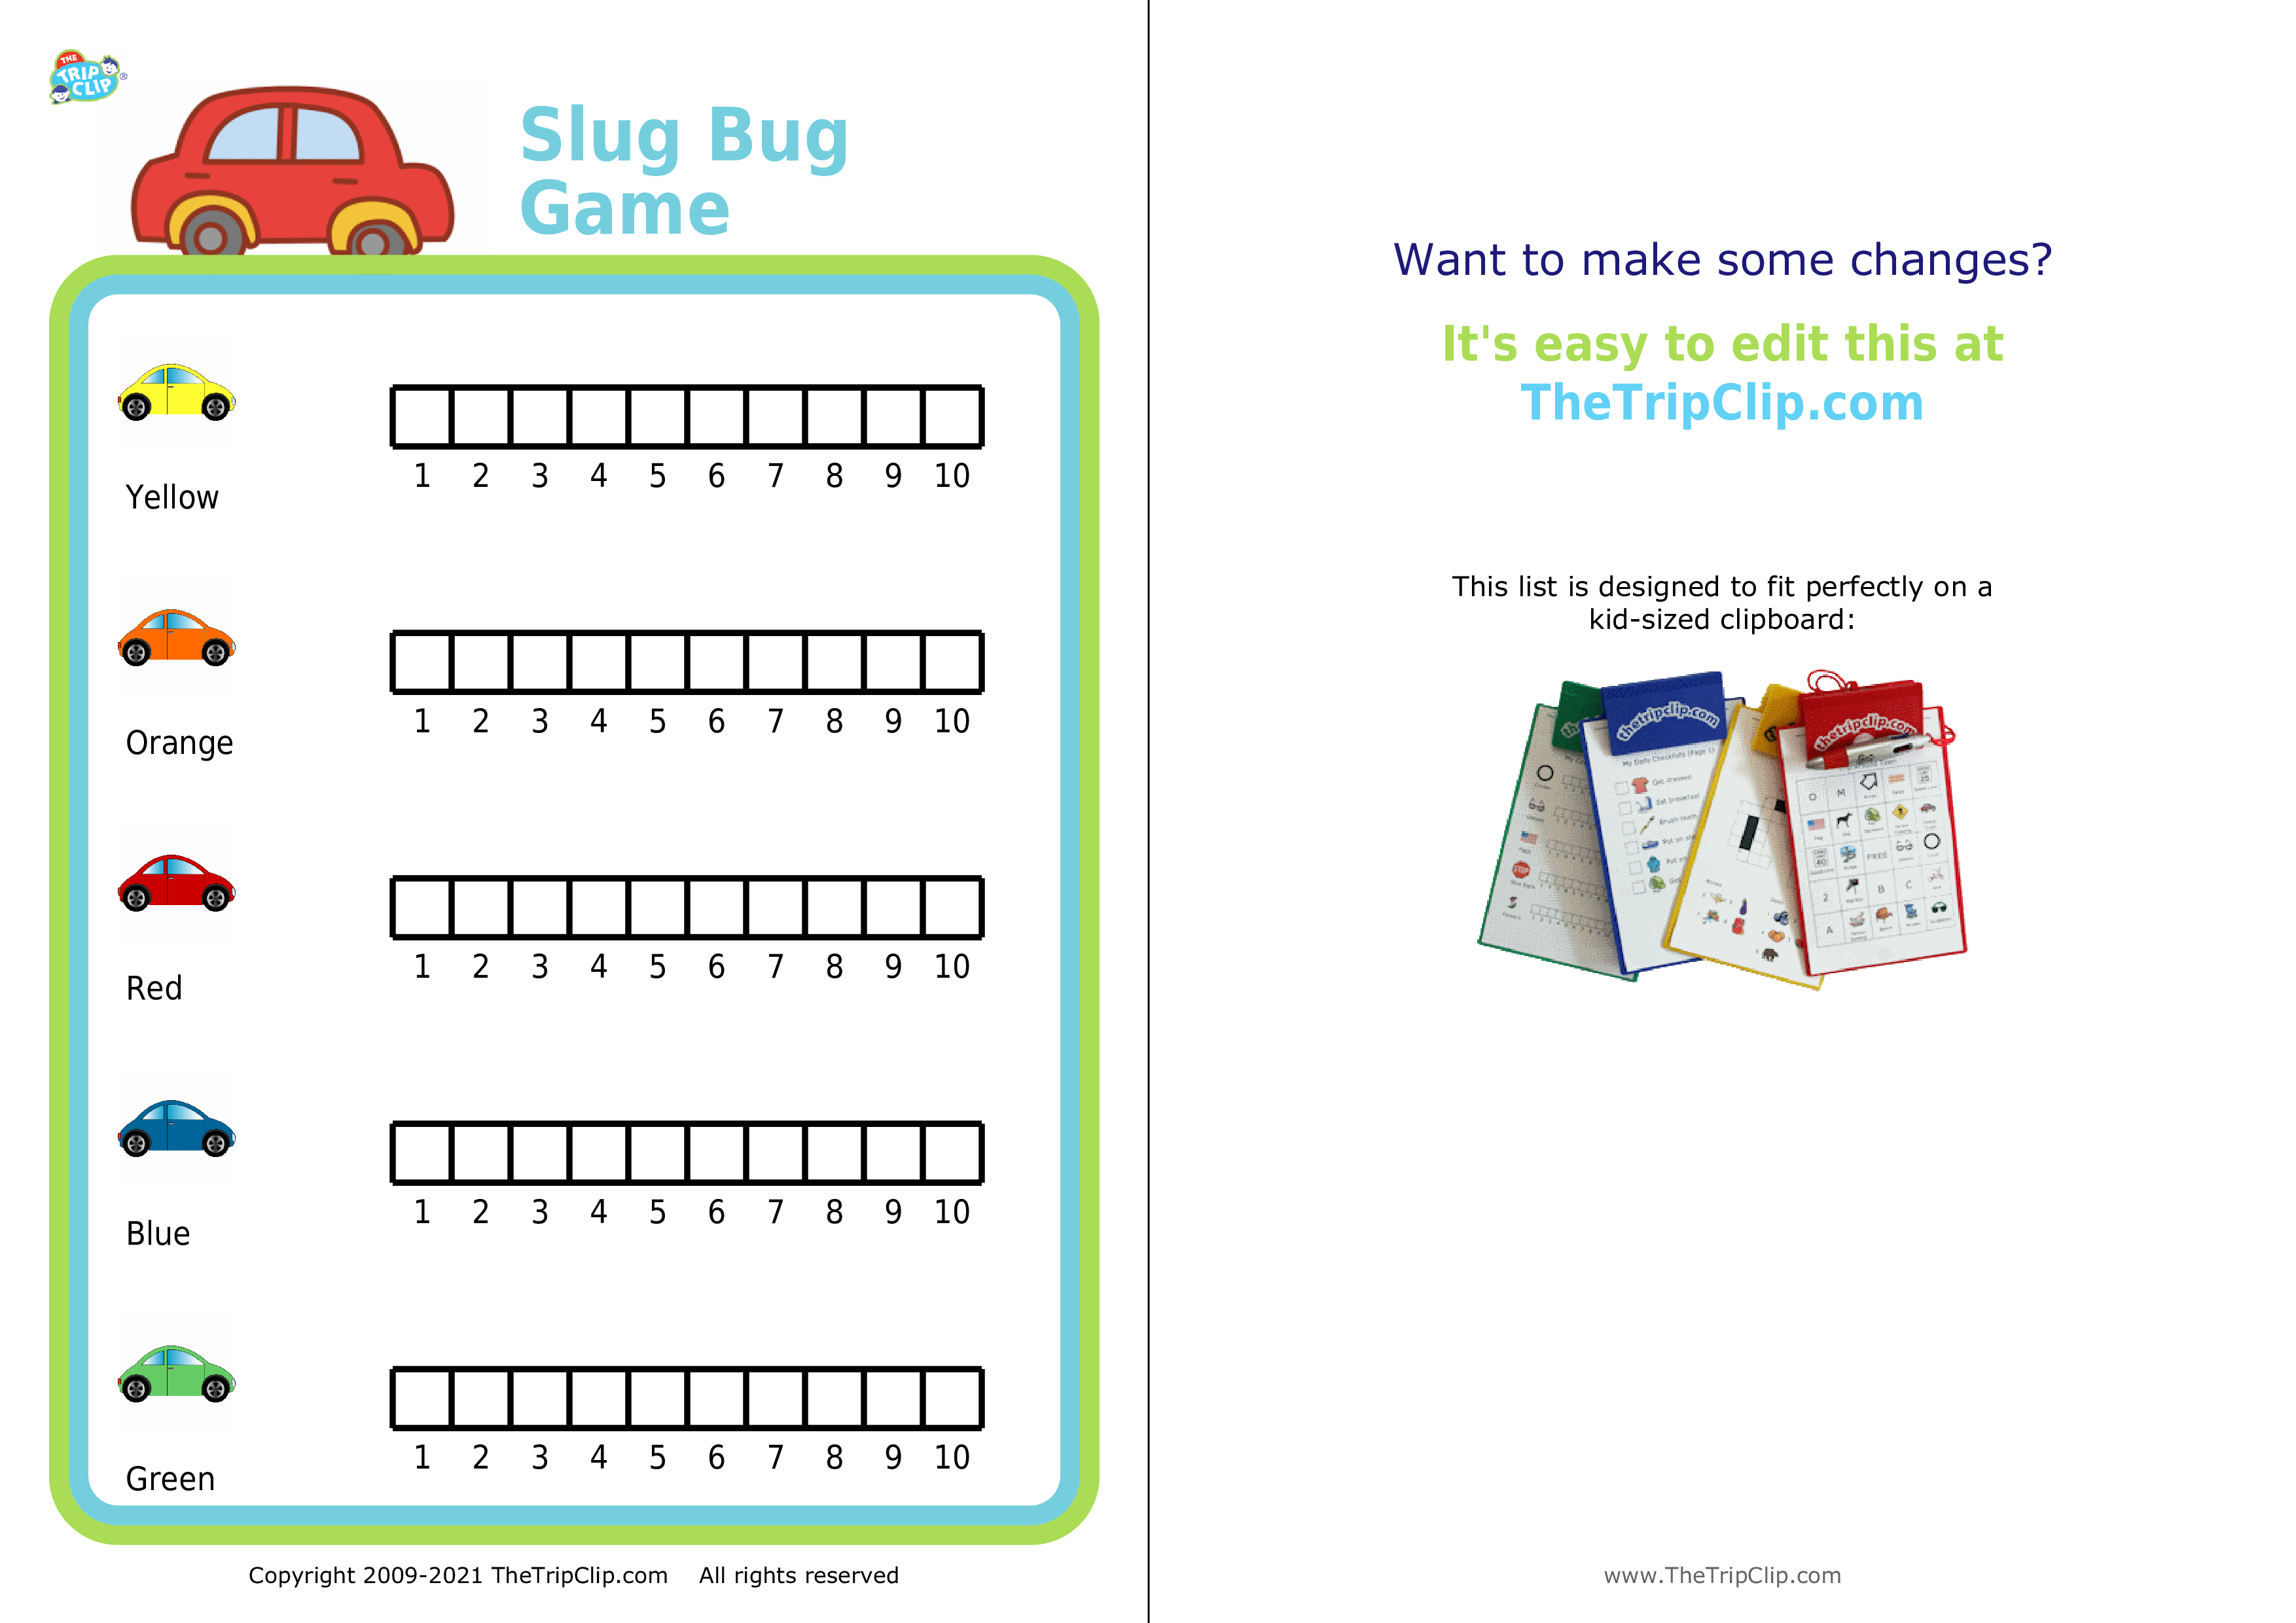 Slug bug game with simple graphing for kids